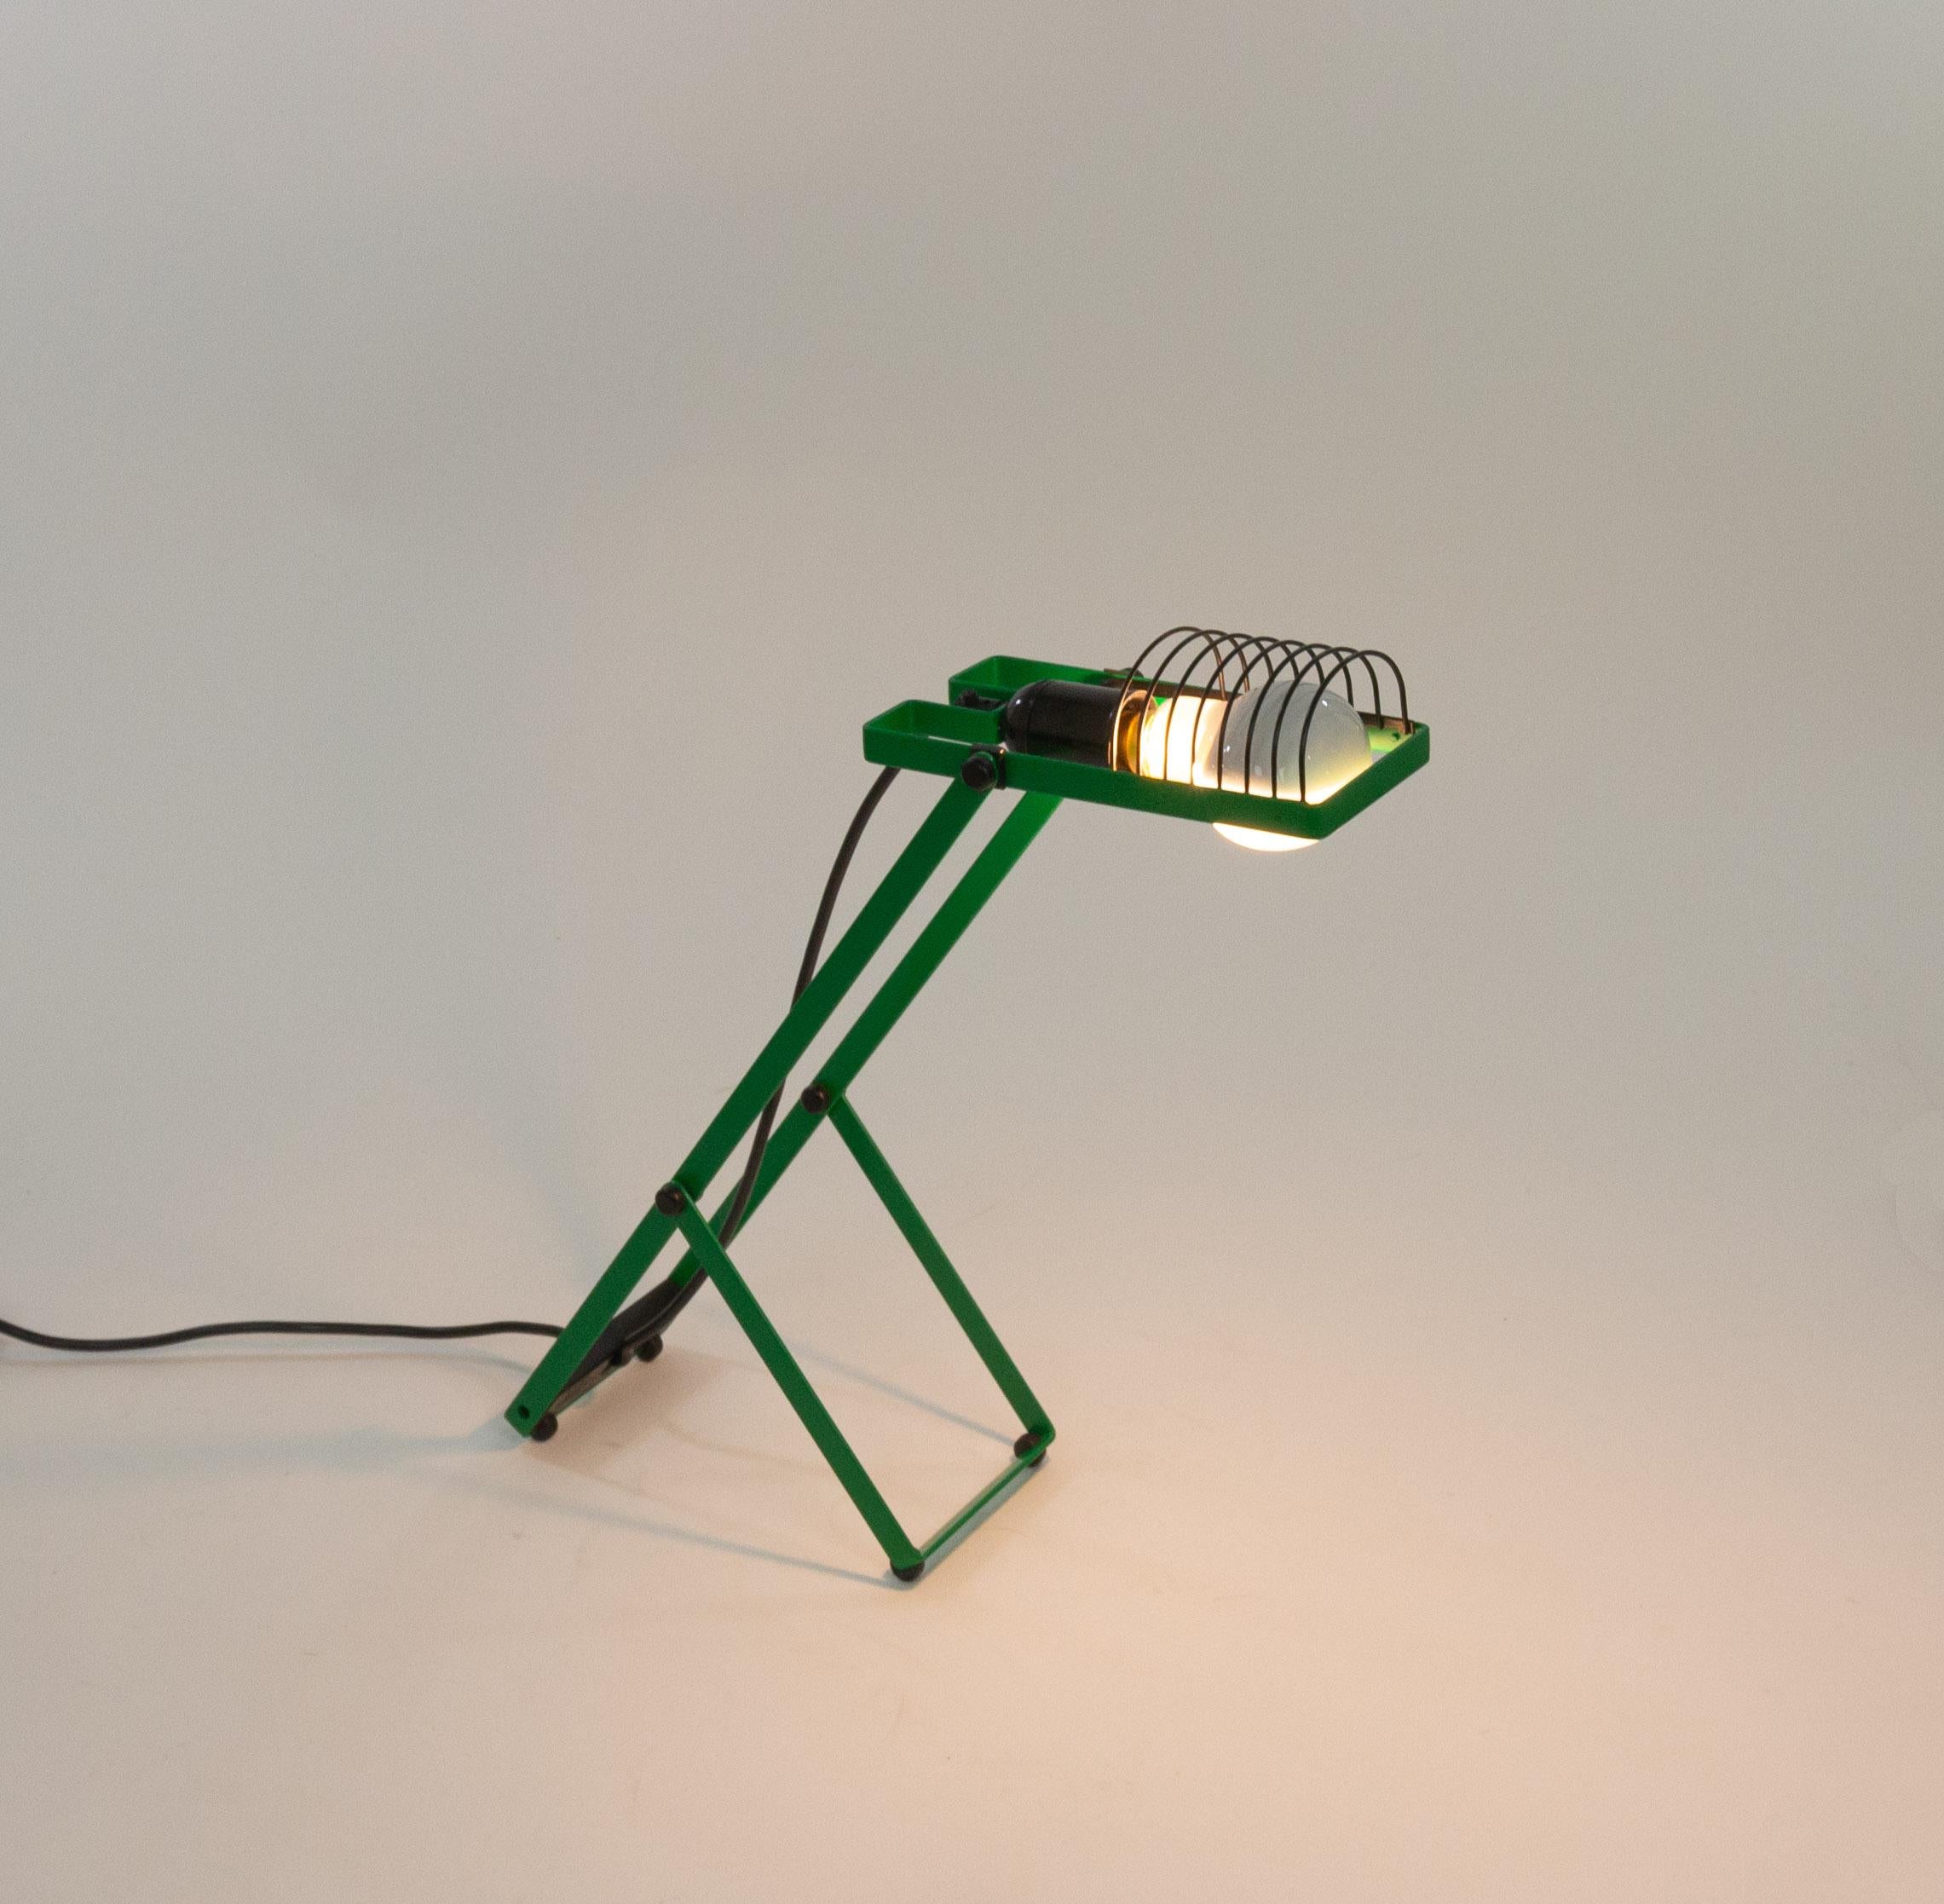 Lampe de table Sintesi conçue par Ernesto Gismondi pour la société italienne de luminaires Artemide dans les années 1970.

Cette lampe fait partie de la première série de lampes Sintesi. Le luminaire est adapté à une fixation à baïonnette et est